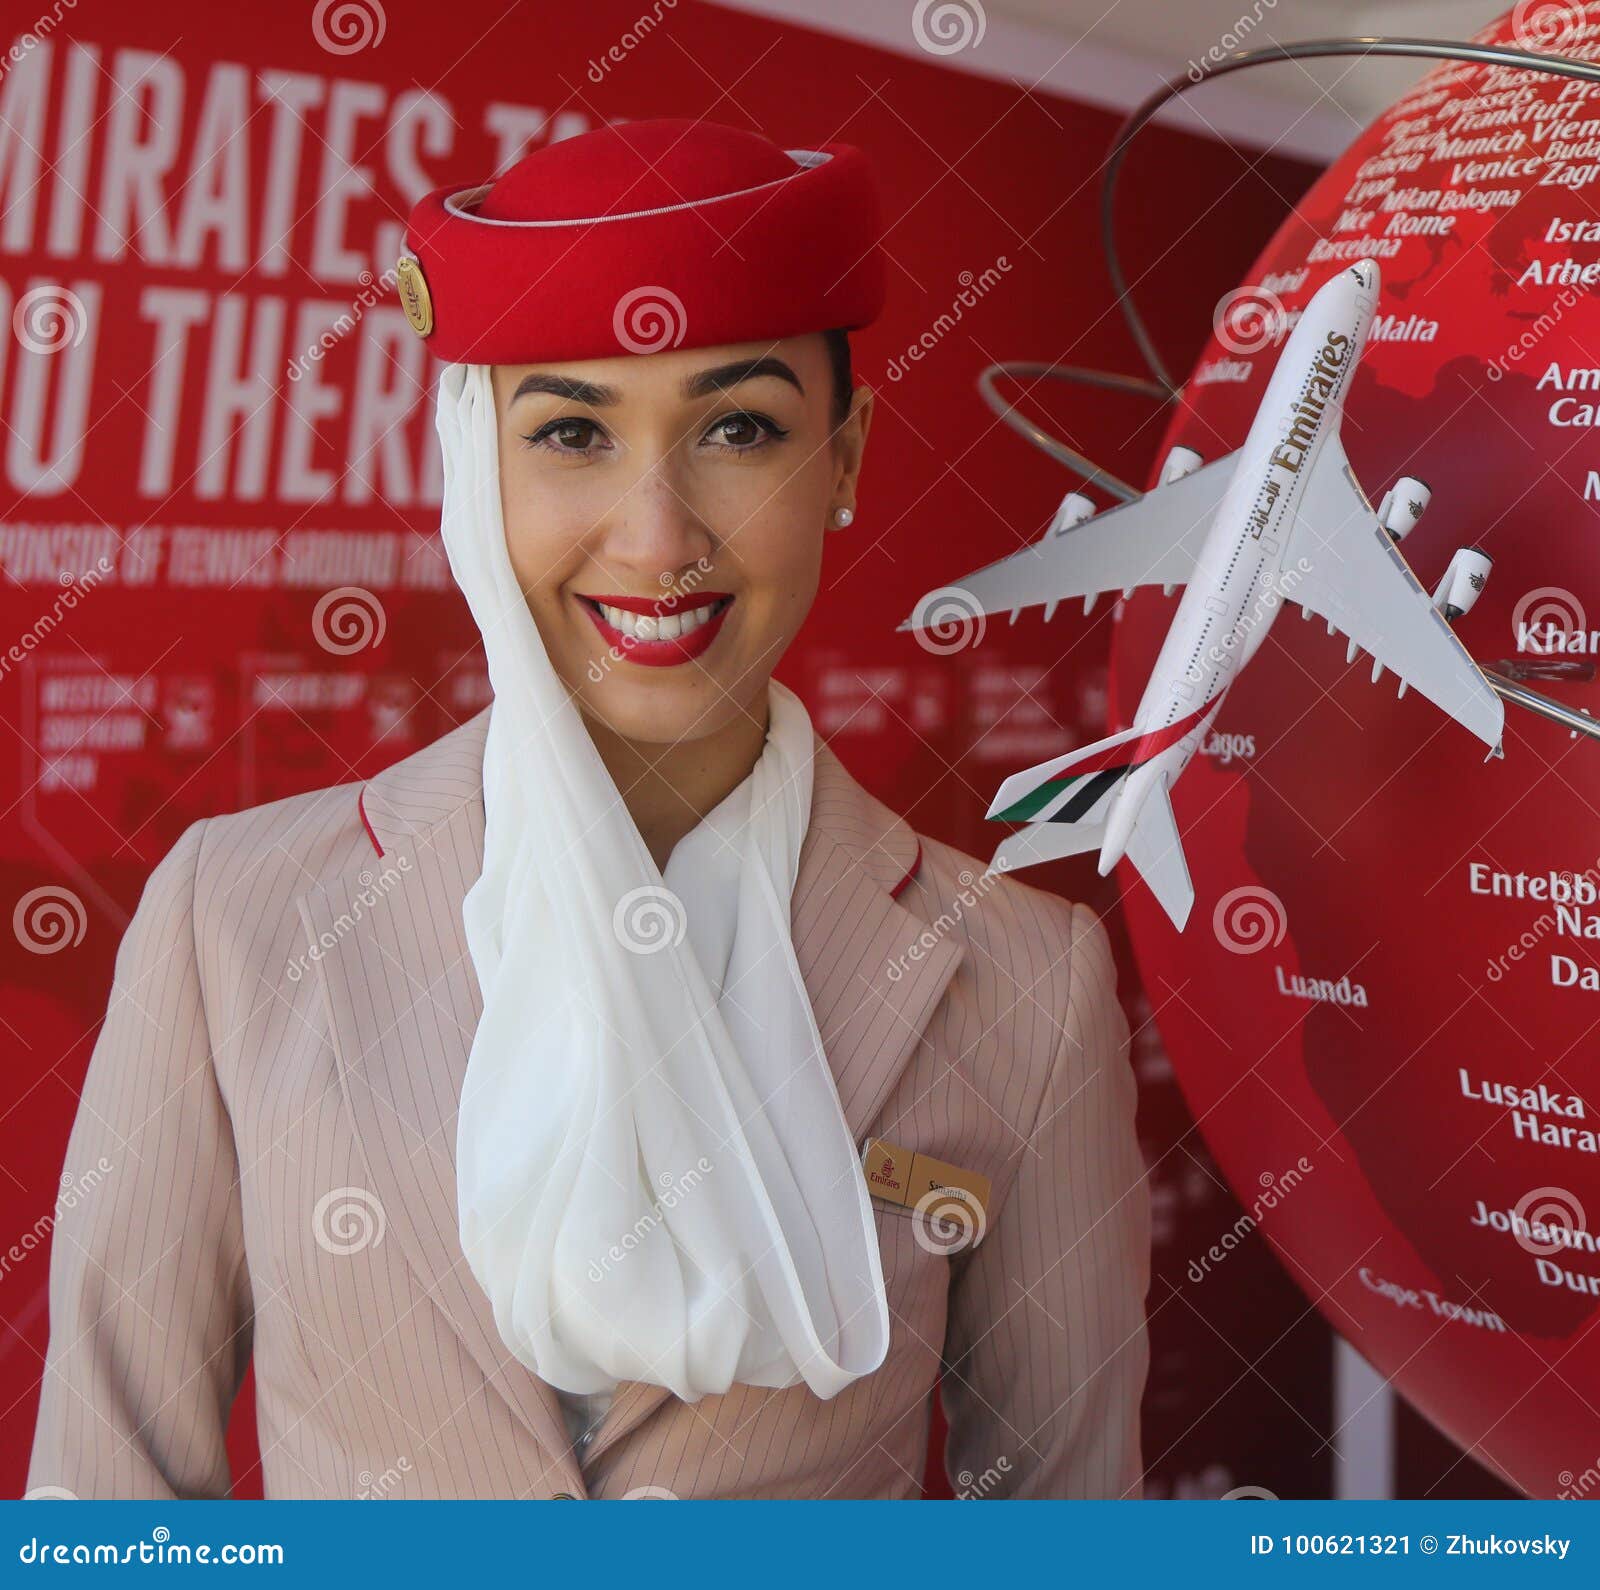 Сайт эмиратские авиалинии. Стюардессы Эмирейтс. Стюардессы ЭМИРАТСКИХ авиалиний. Gulf Air стюардессы. Реклама со стюардессами Эмирейтс.